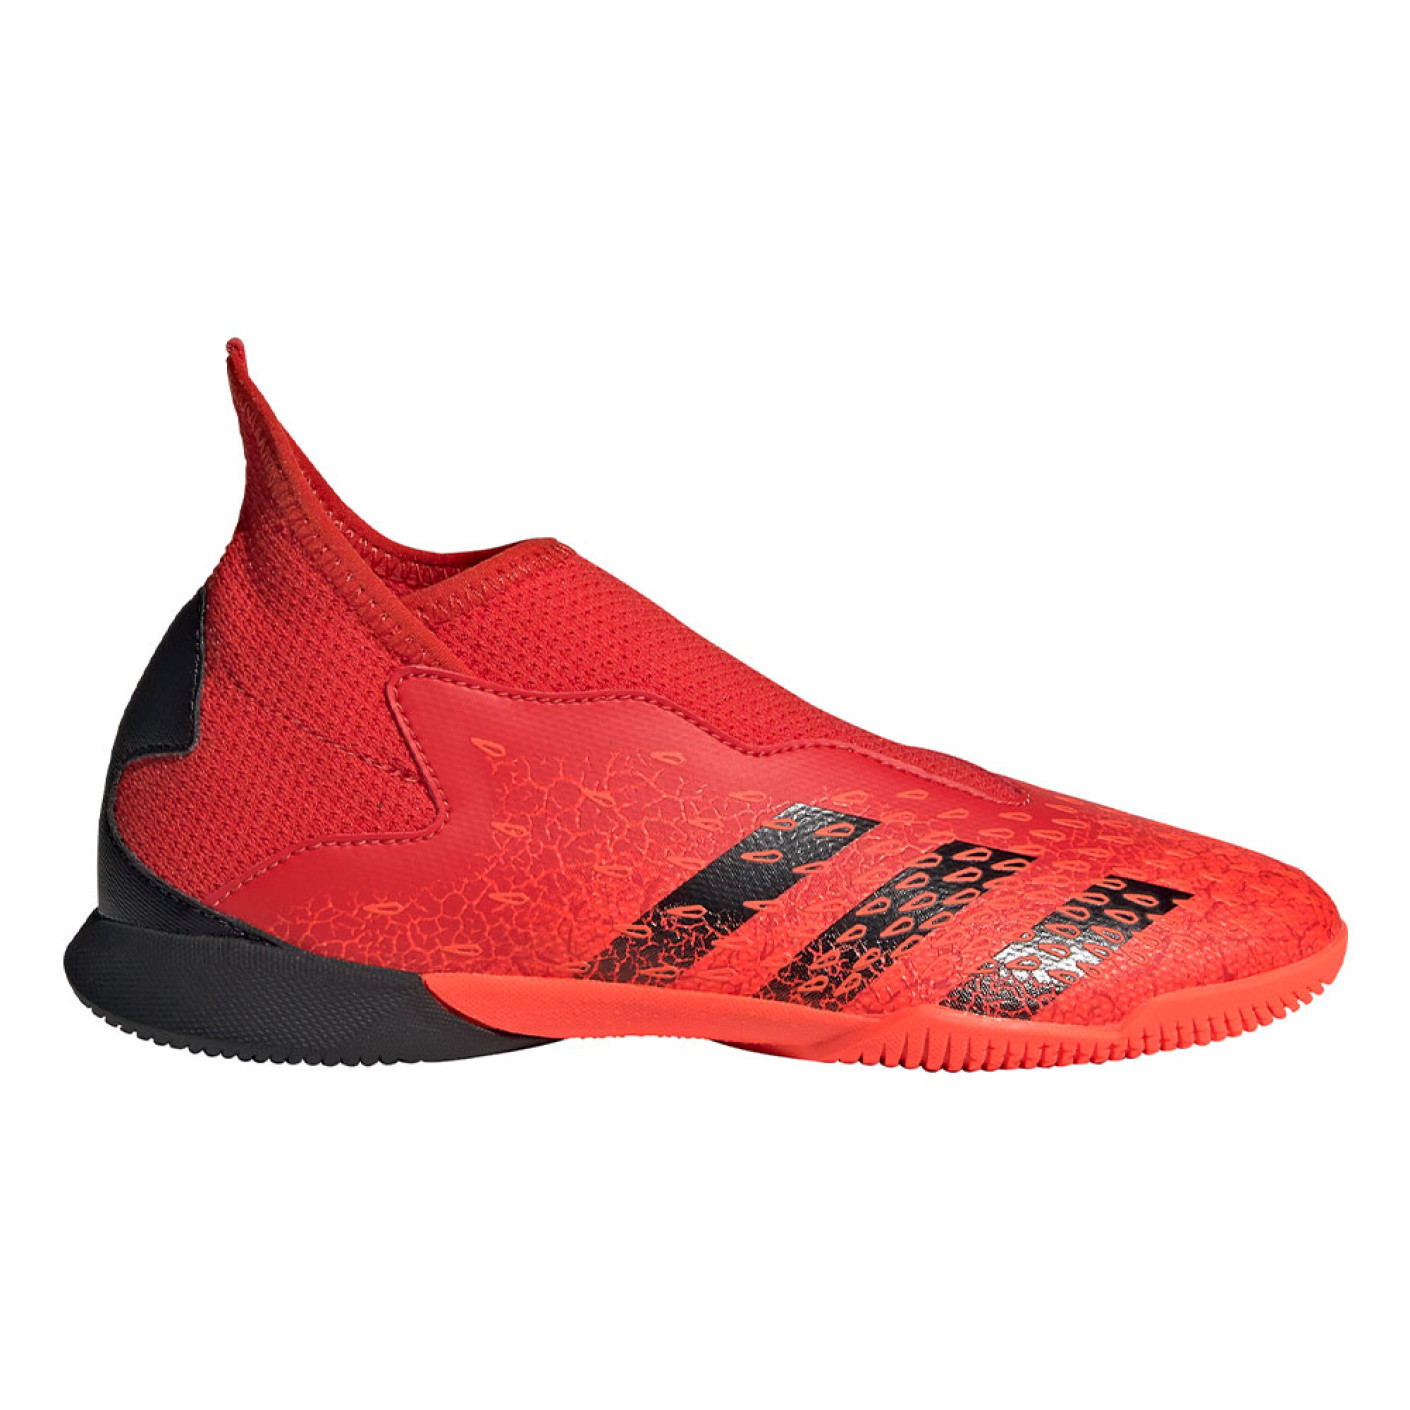 adidas Predator Freak.3 LL Indoor Football Chaussures (IN) Enfant Rouge Noir Rouge